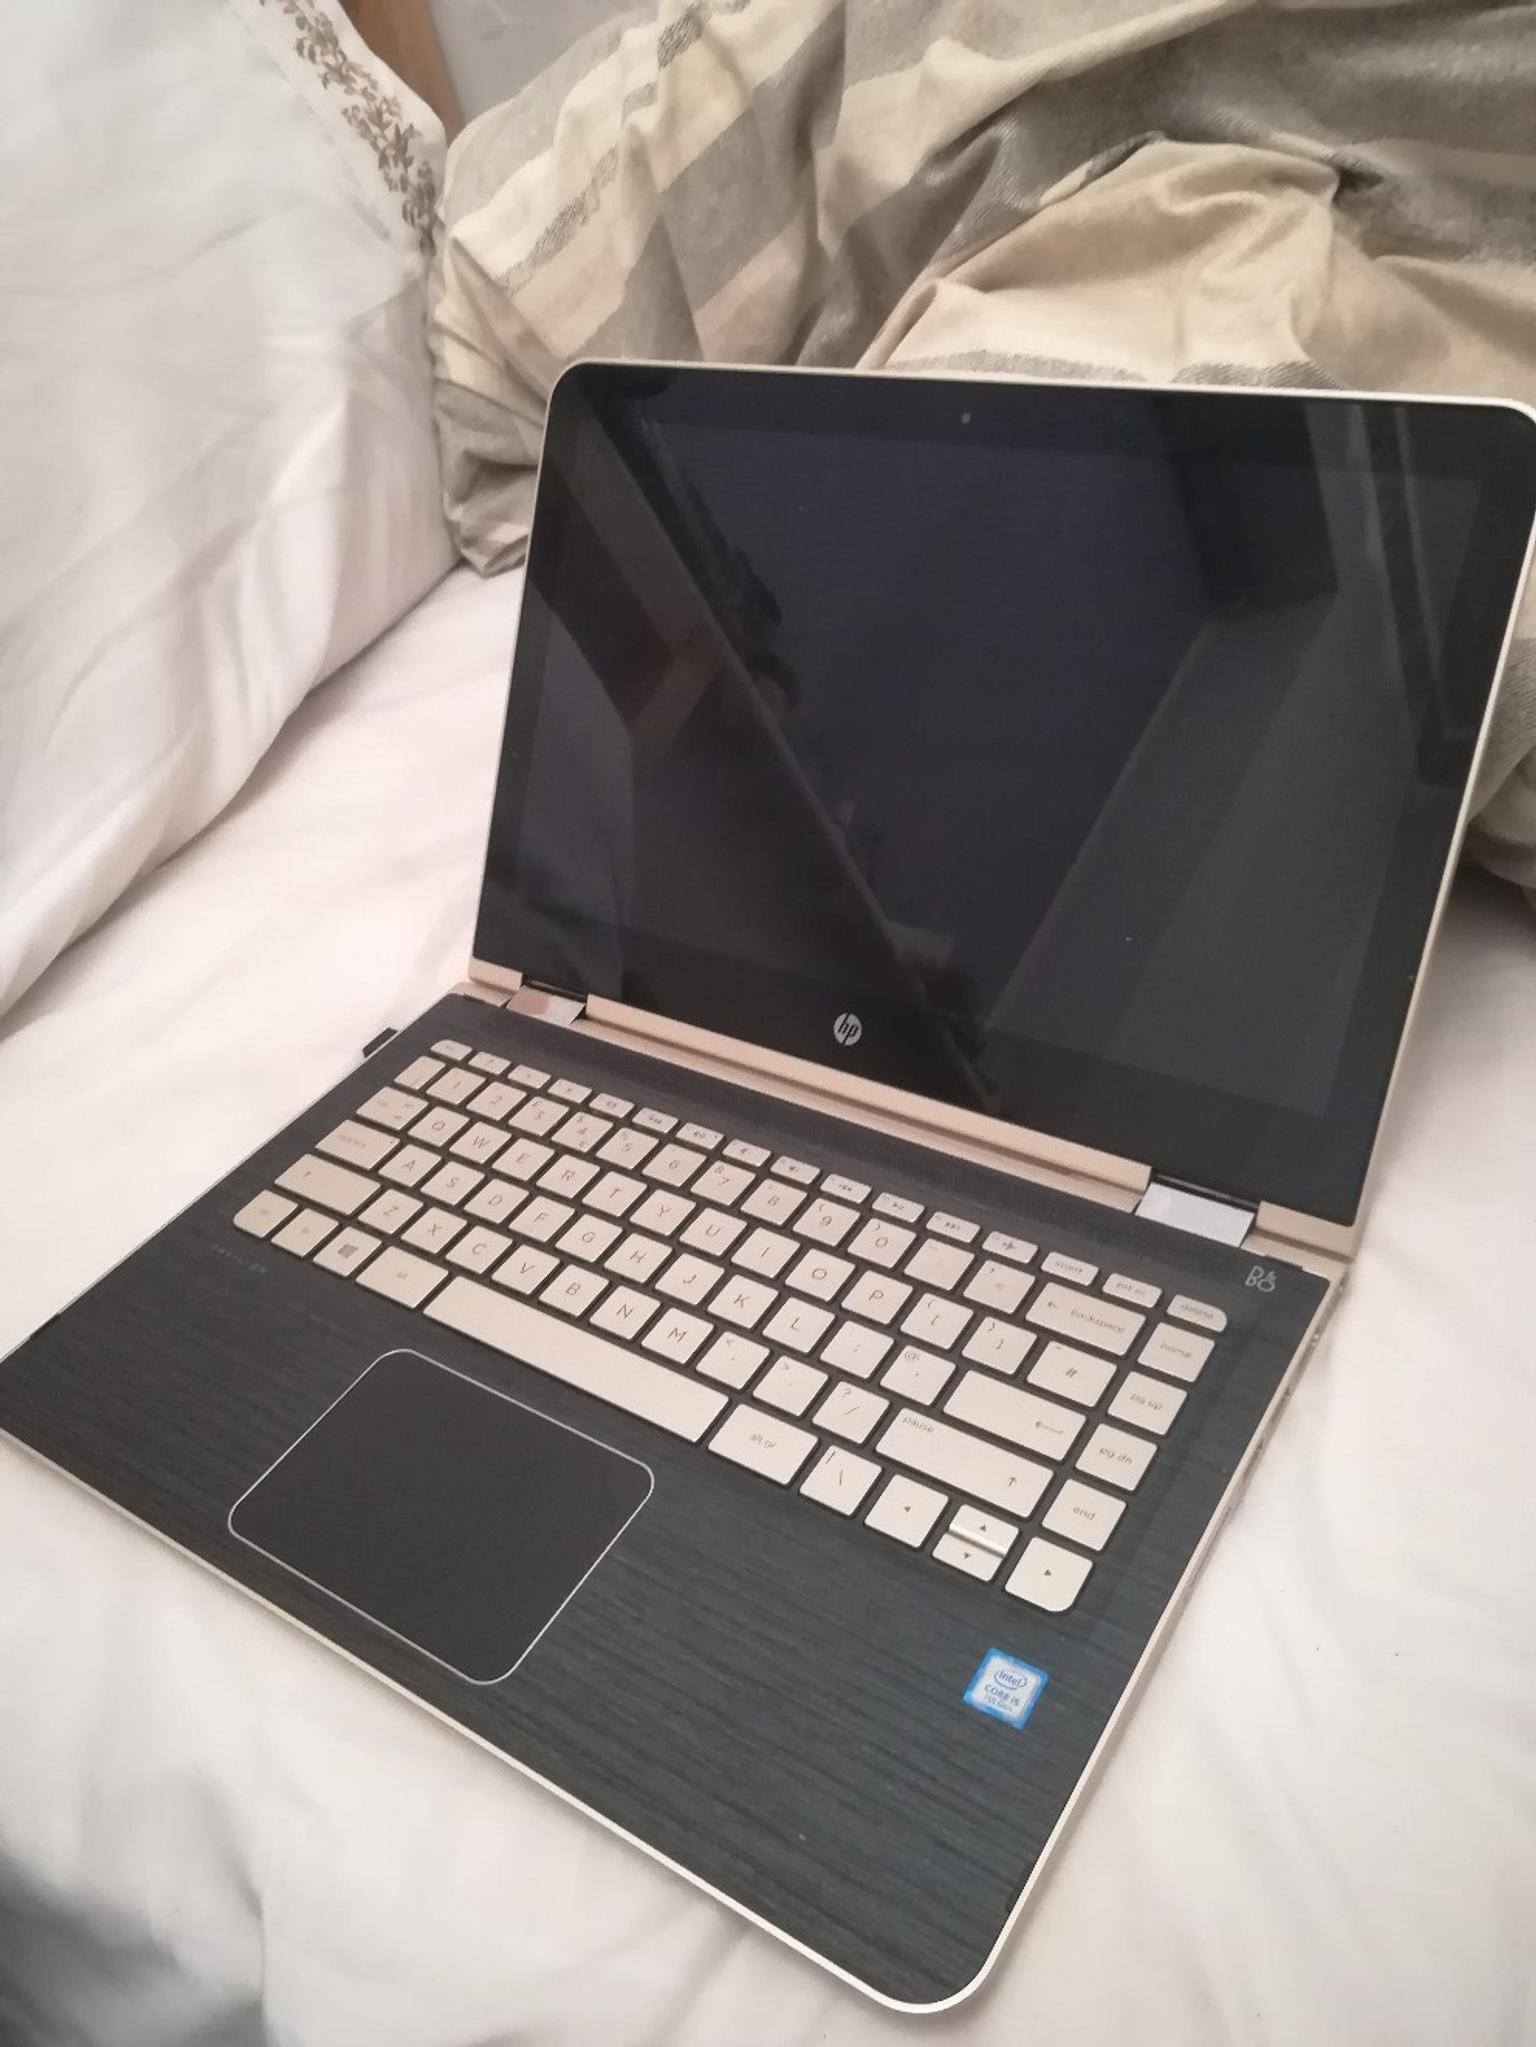 Gold HP PAVILION laptop